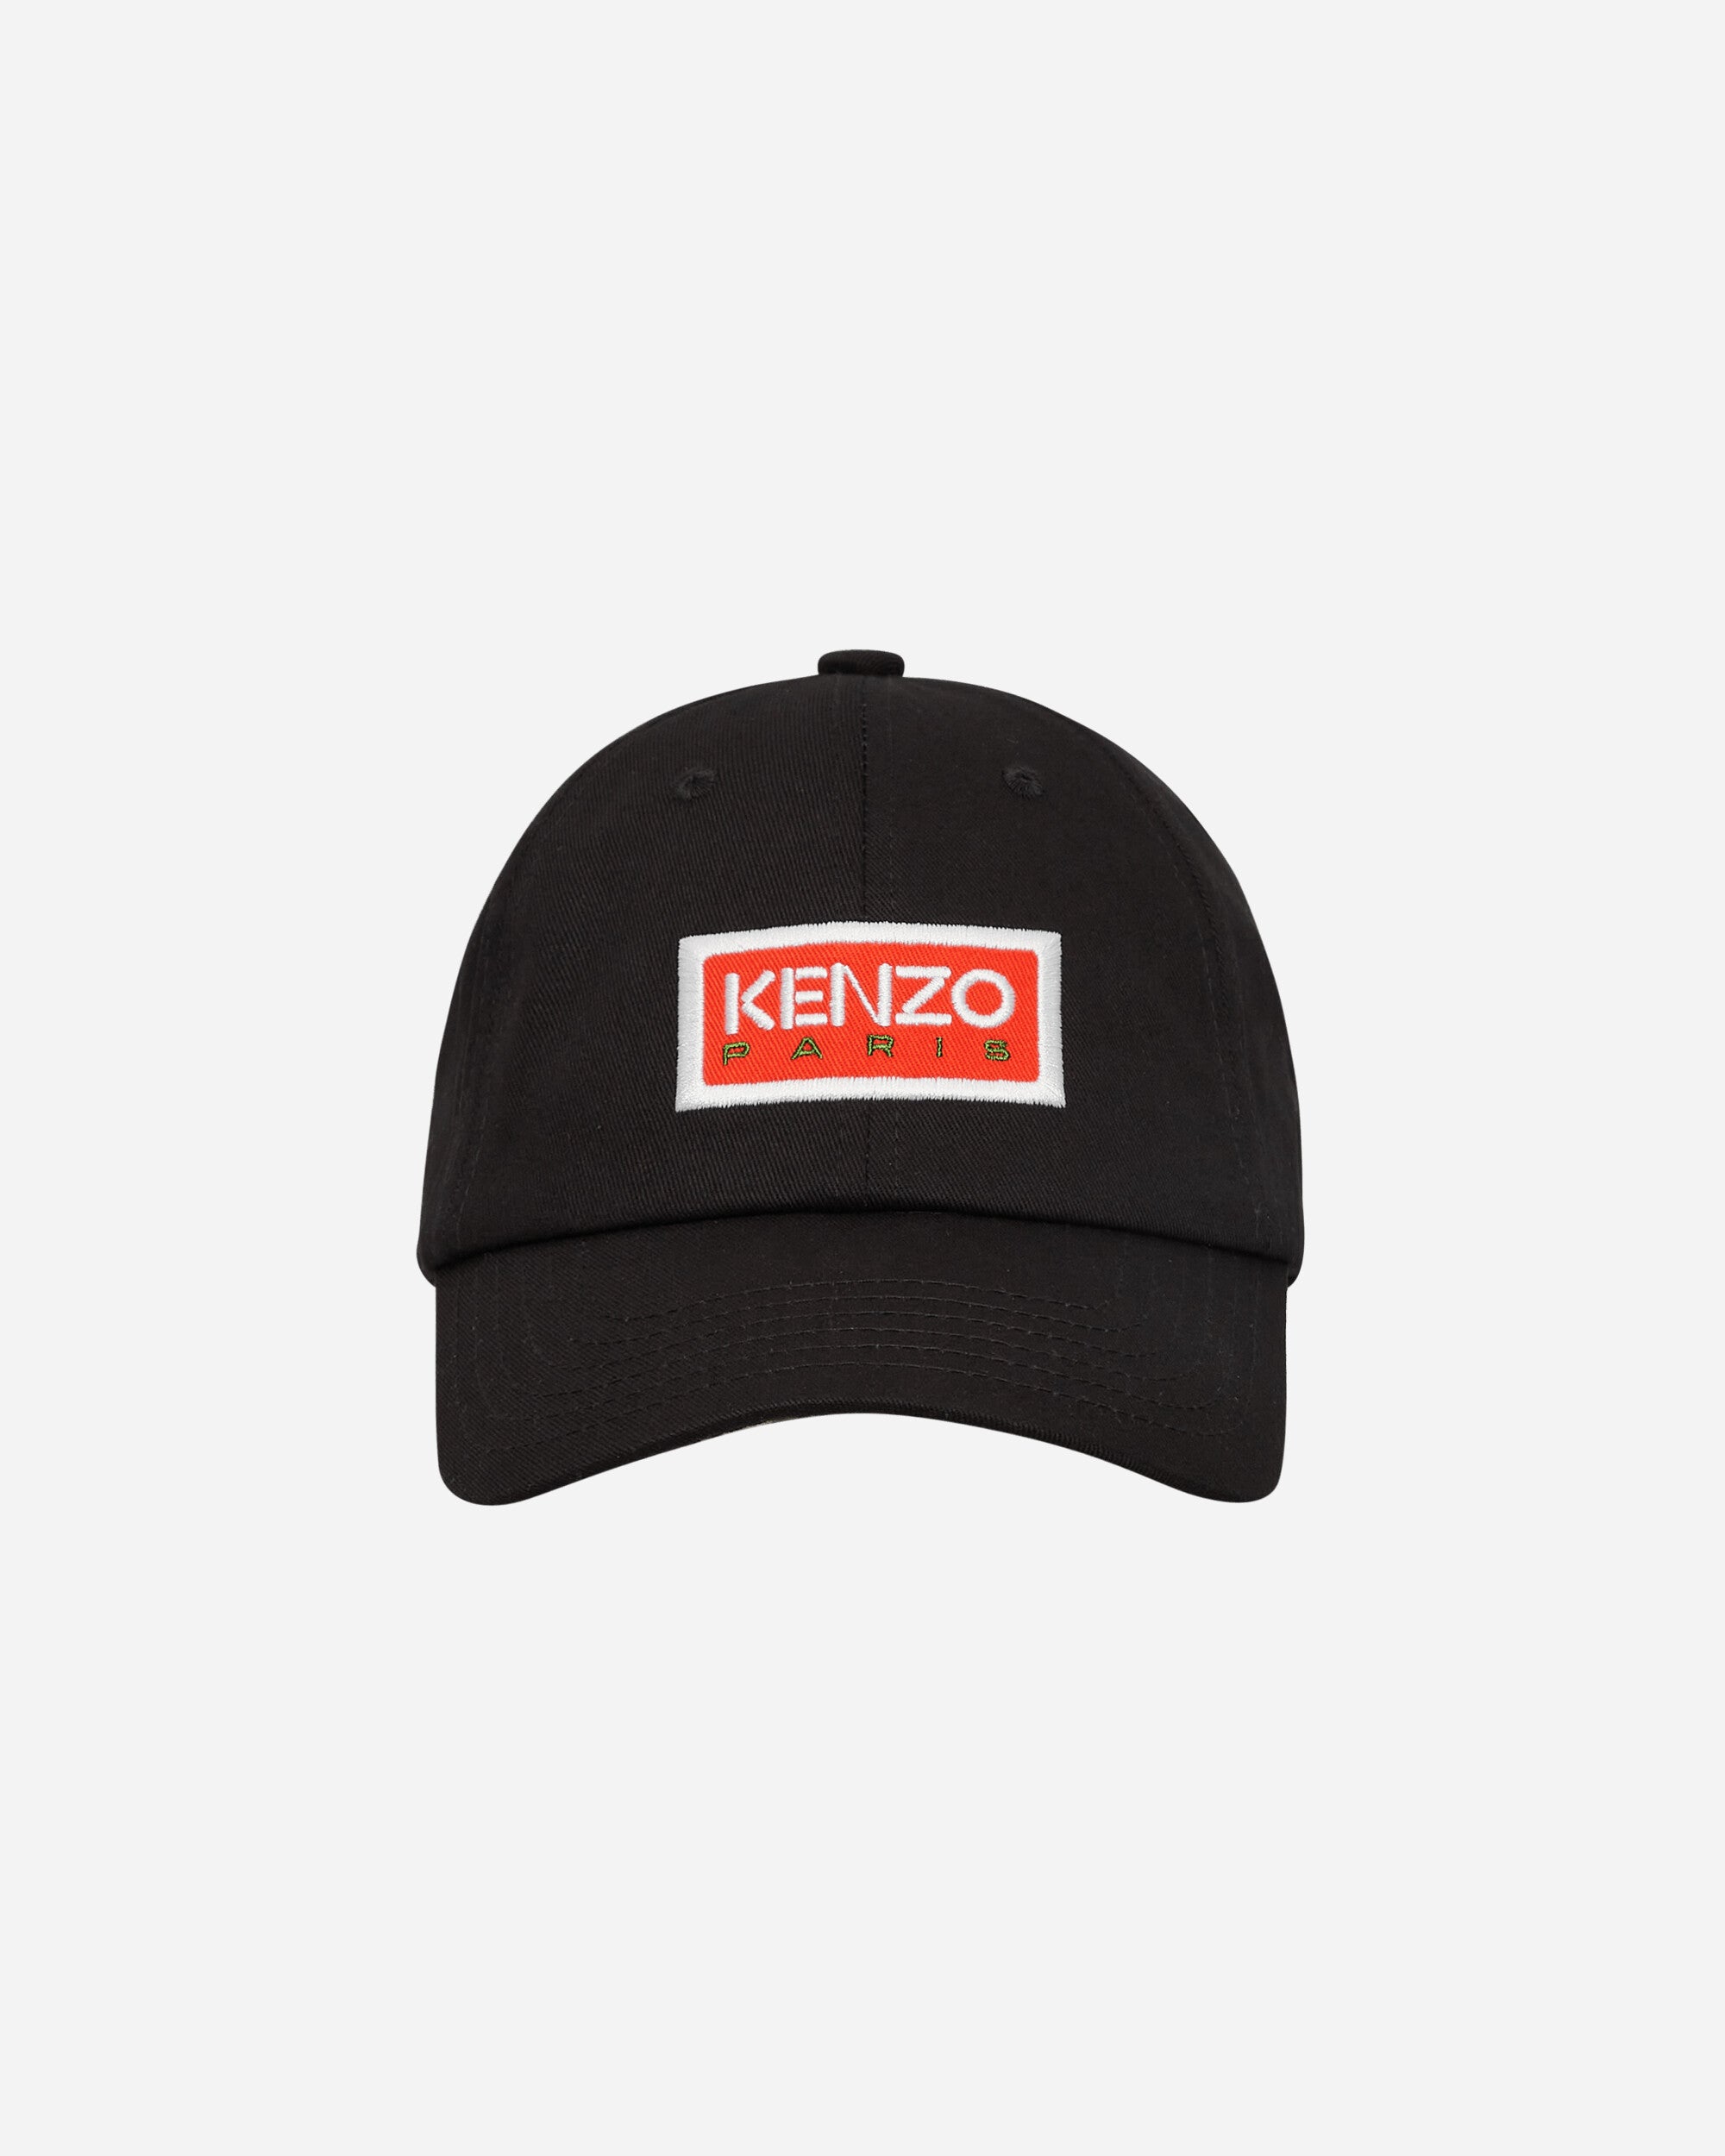 Kenzo Paris Cap Black Hats Caps FD55AC711F32 99